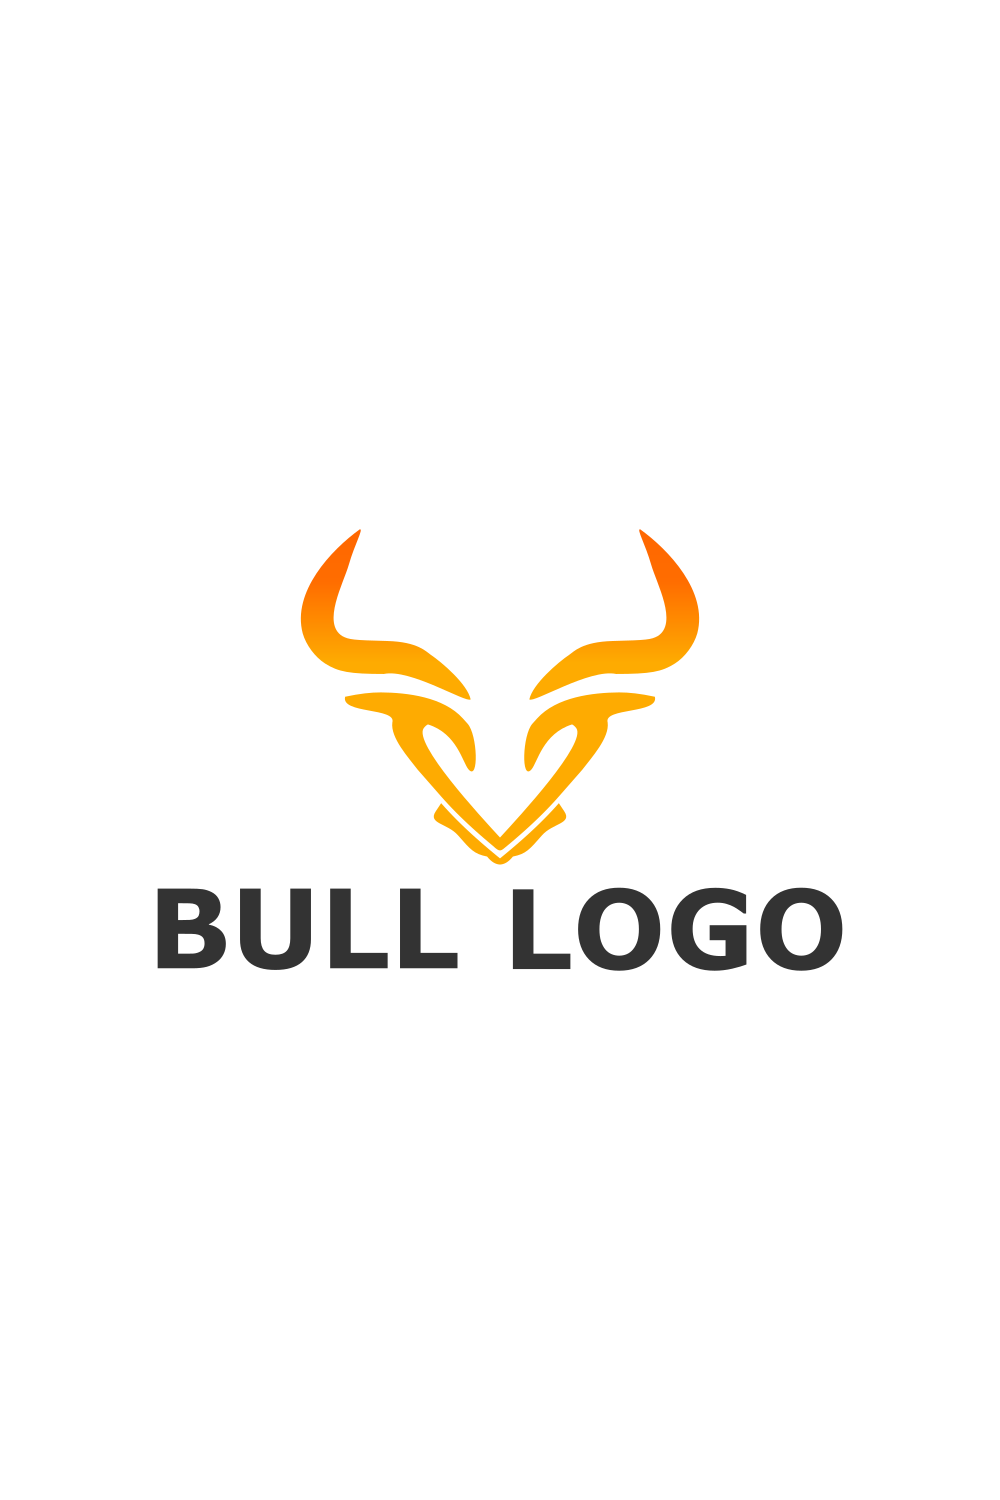 Bull Design Logo Template cover image.